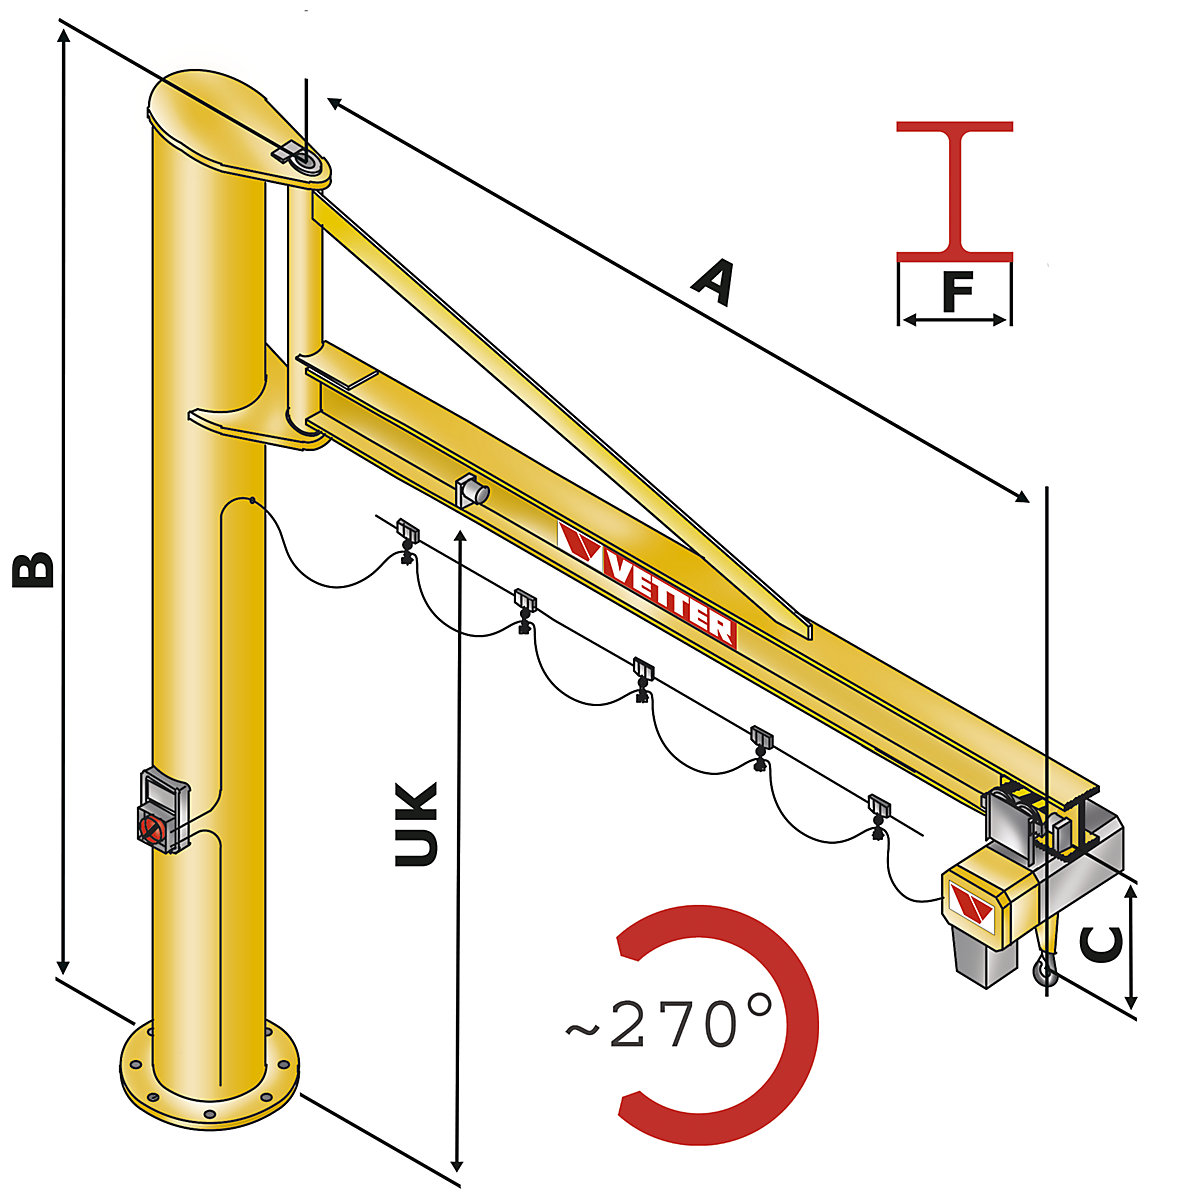 PRAKTIKUS PS post mounted jib crane – Vetter (Product illustration 2)-1